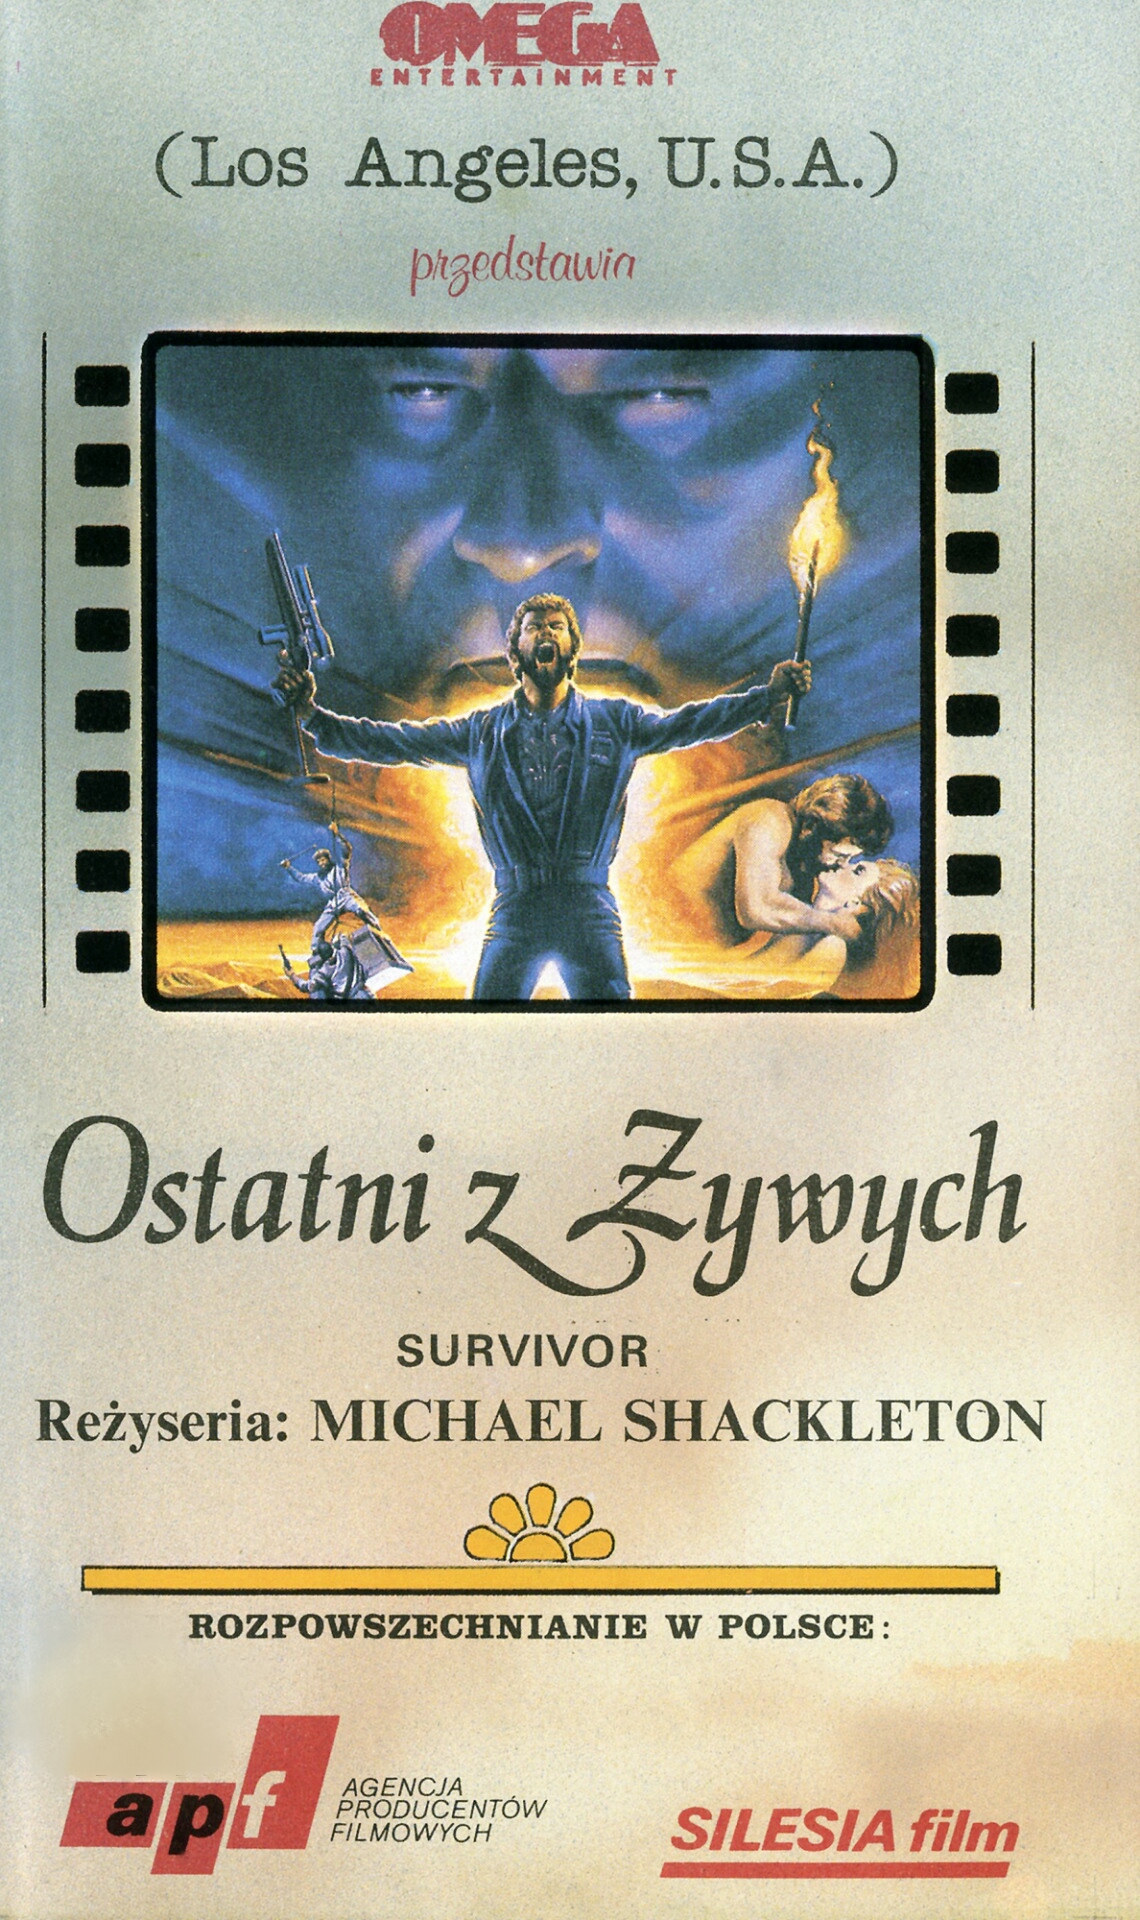 Survivor (1987) Screenshot 2 